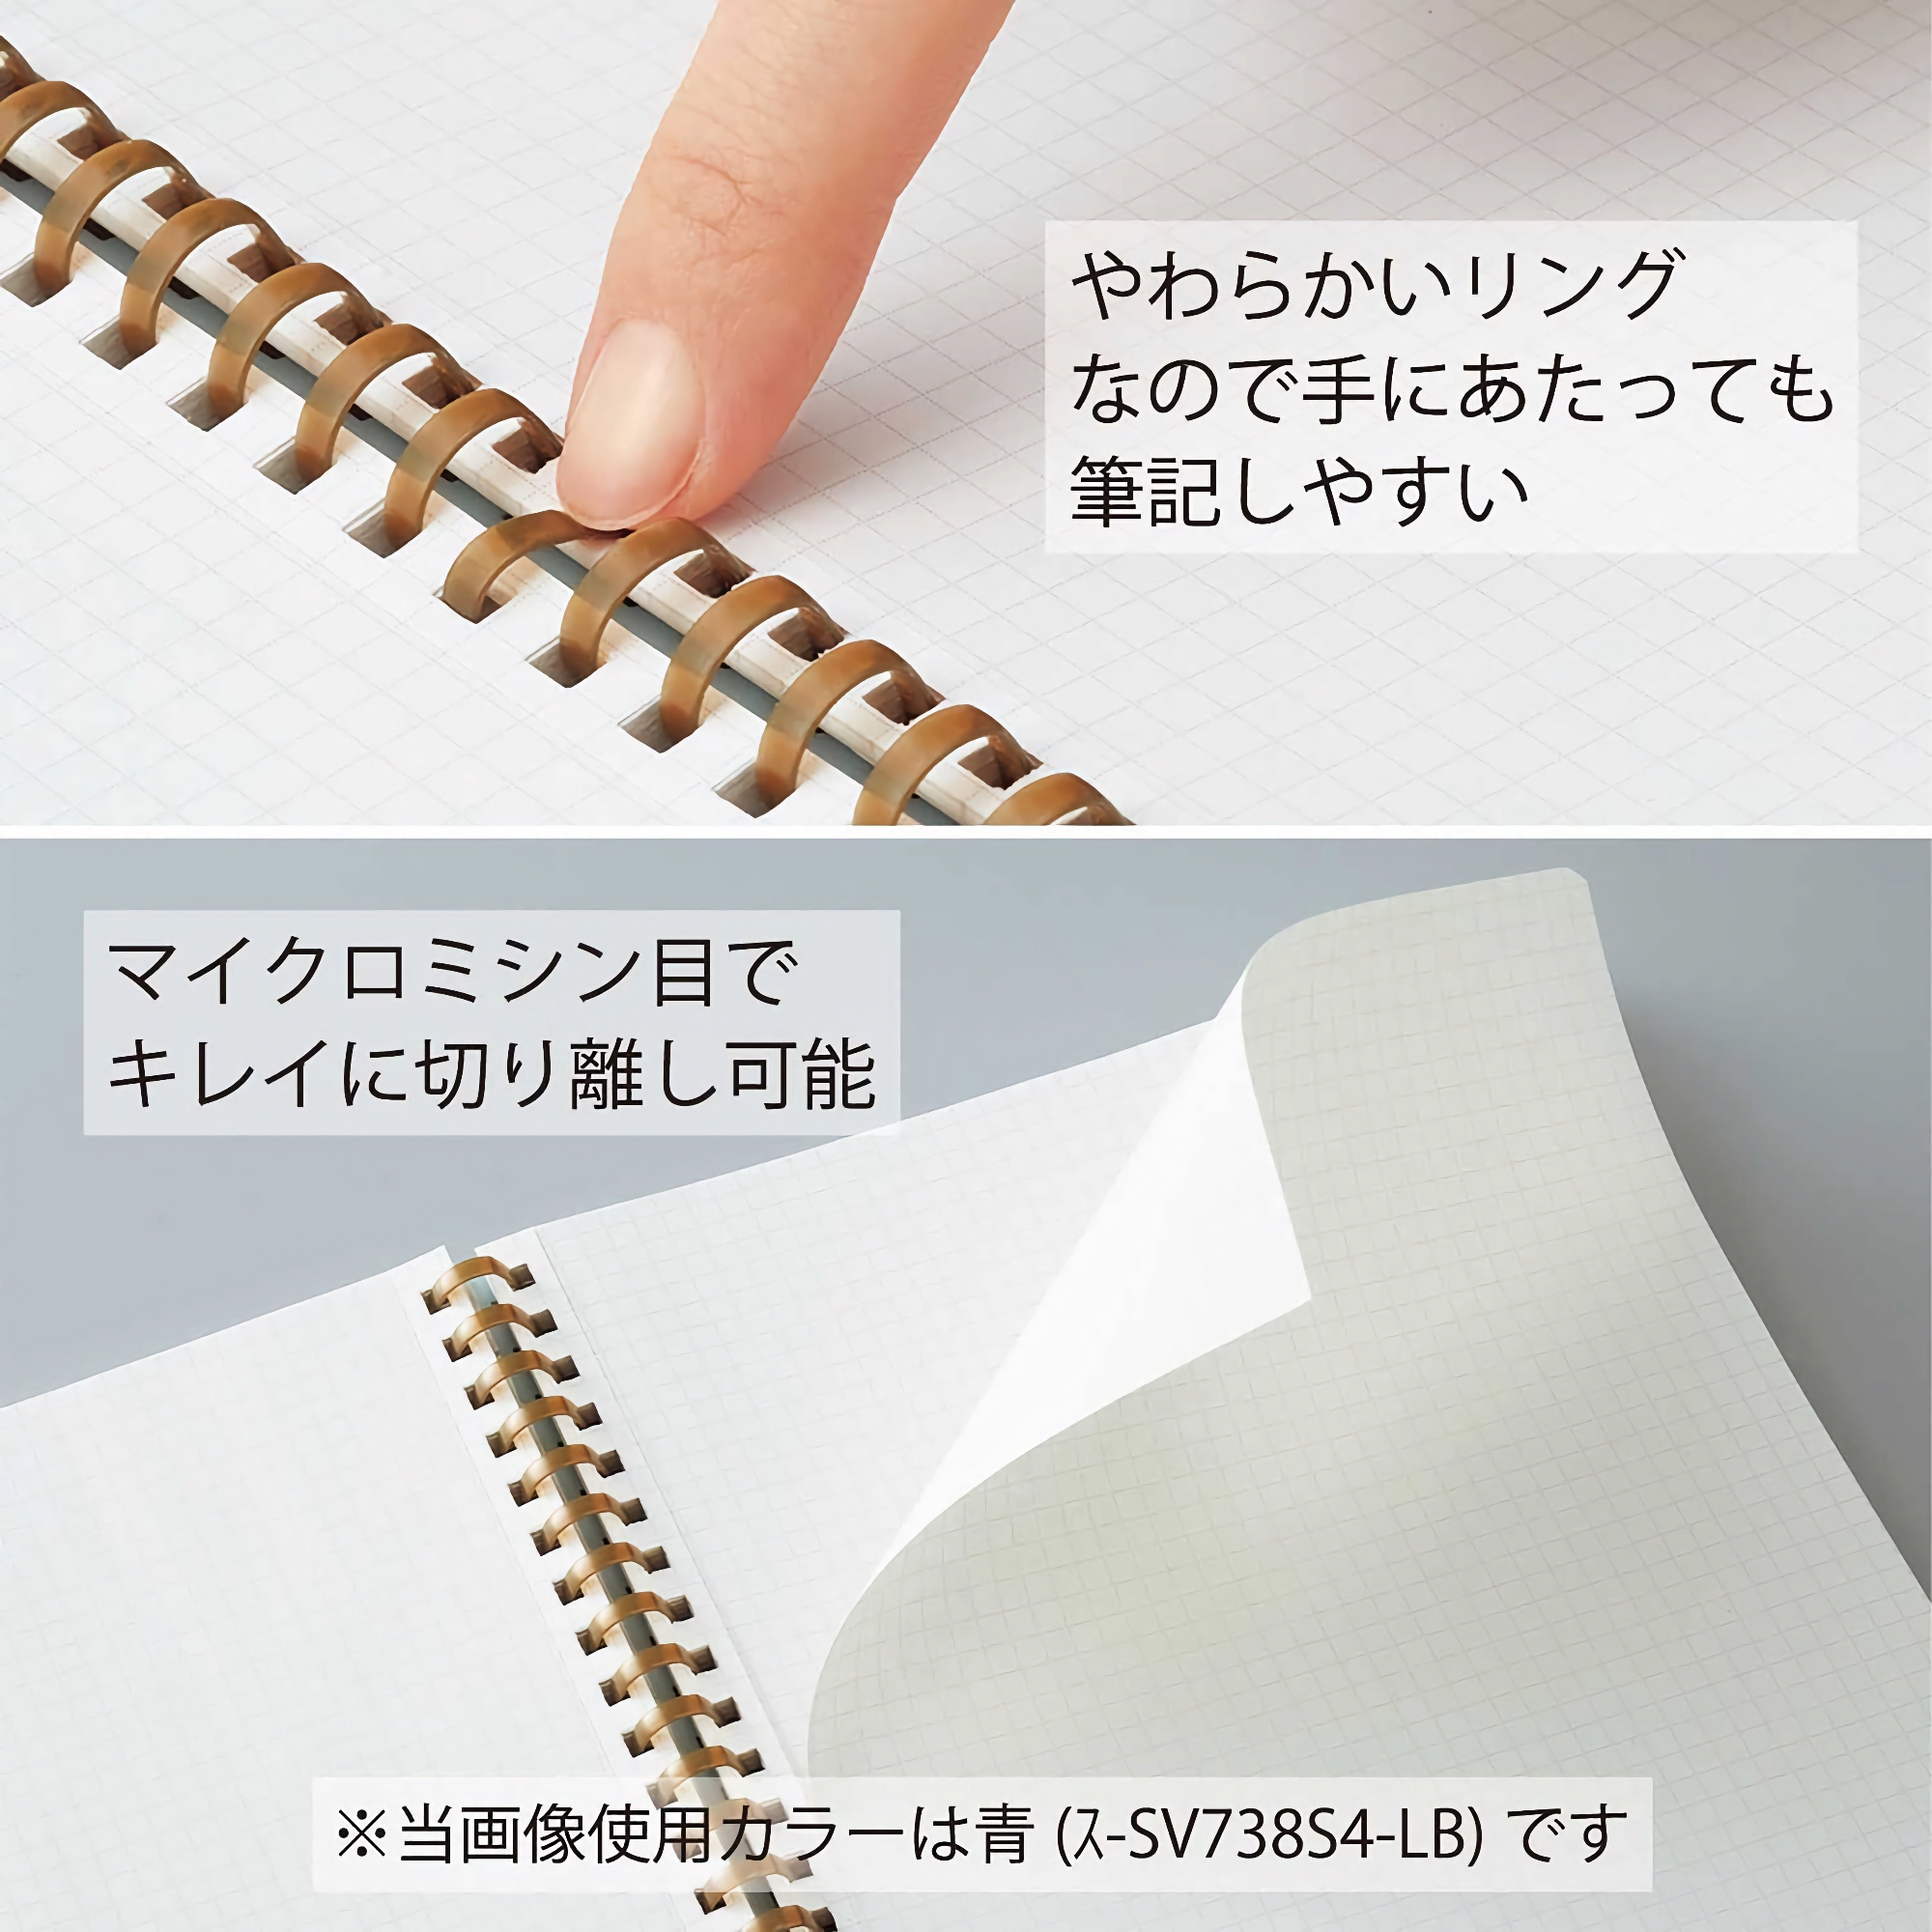 Kokuyo Sooofa Soft Ring Notebook B6 Warm Gray